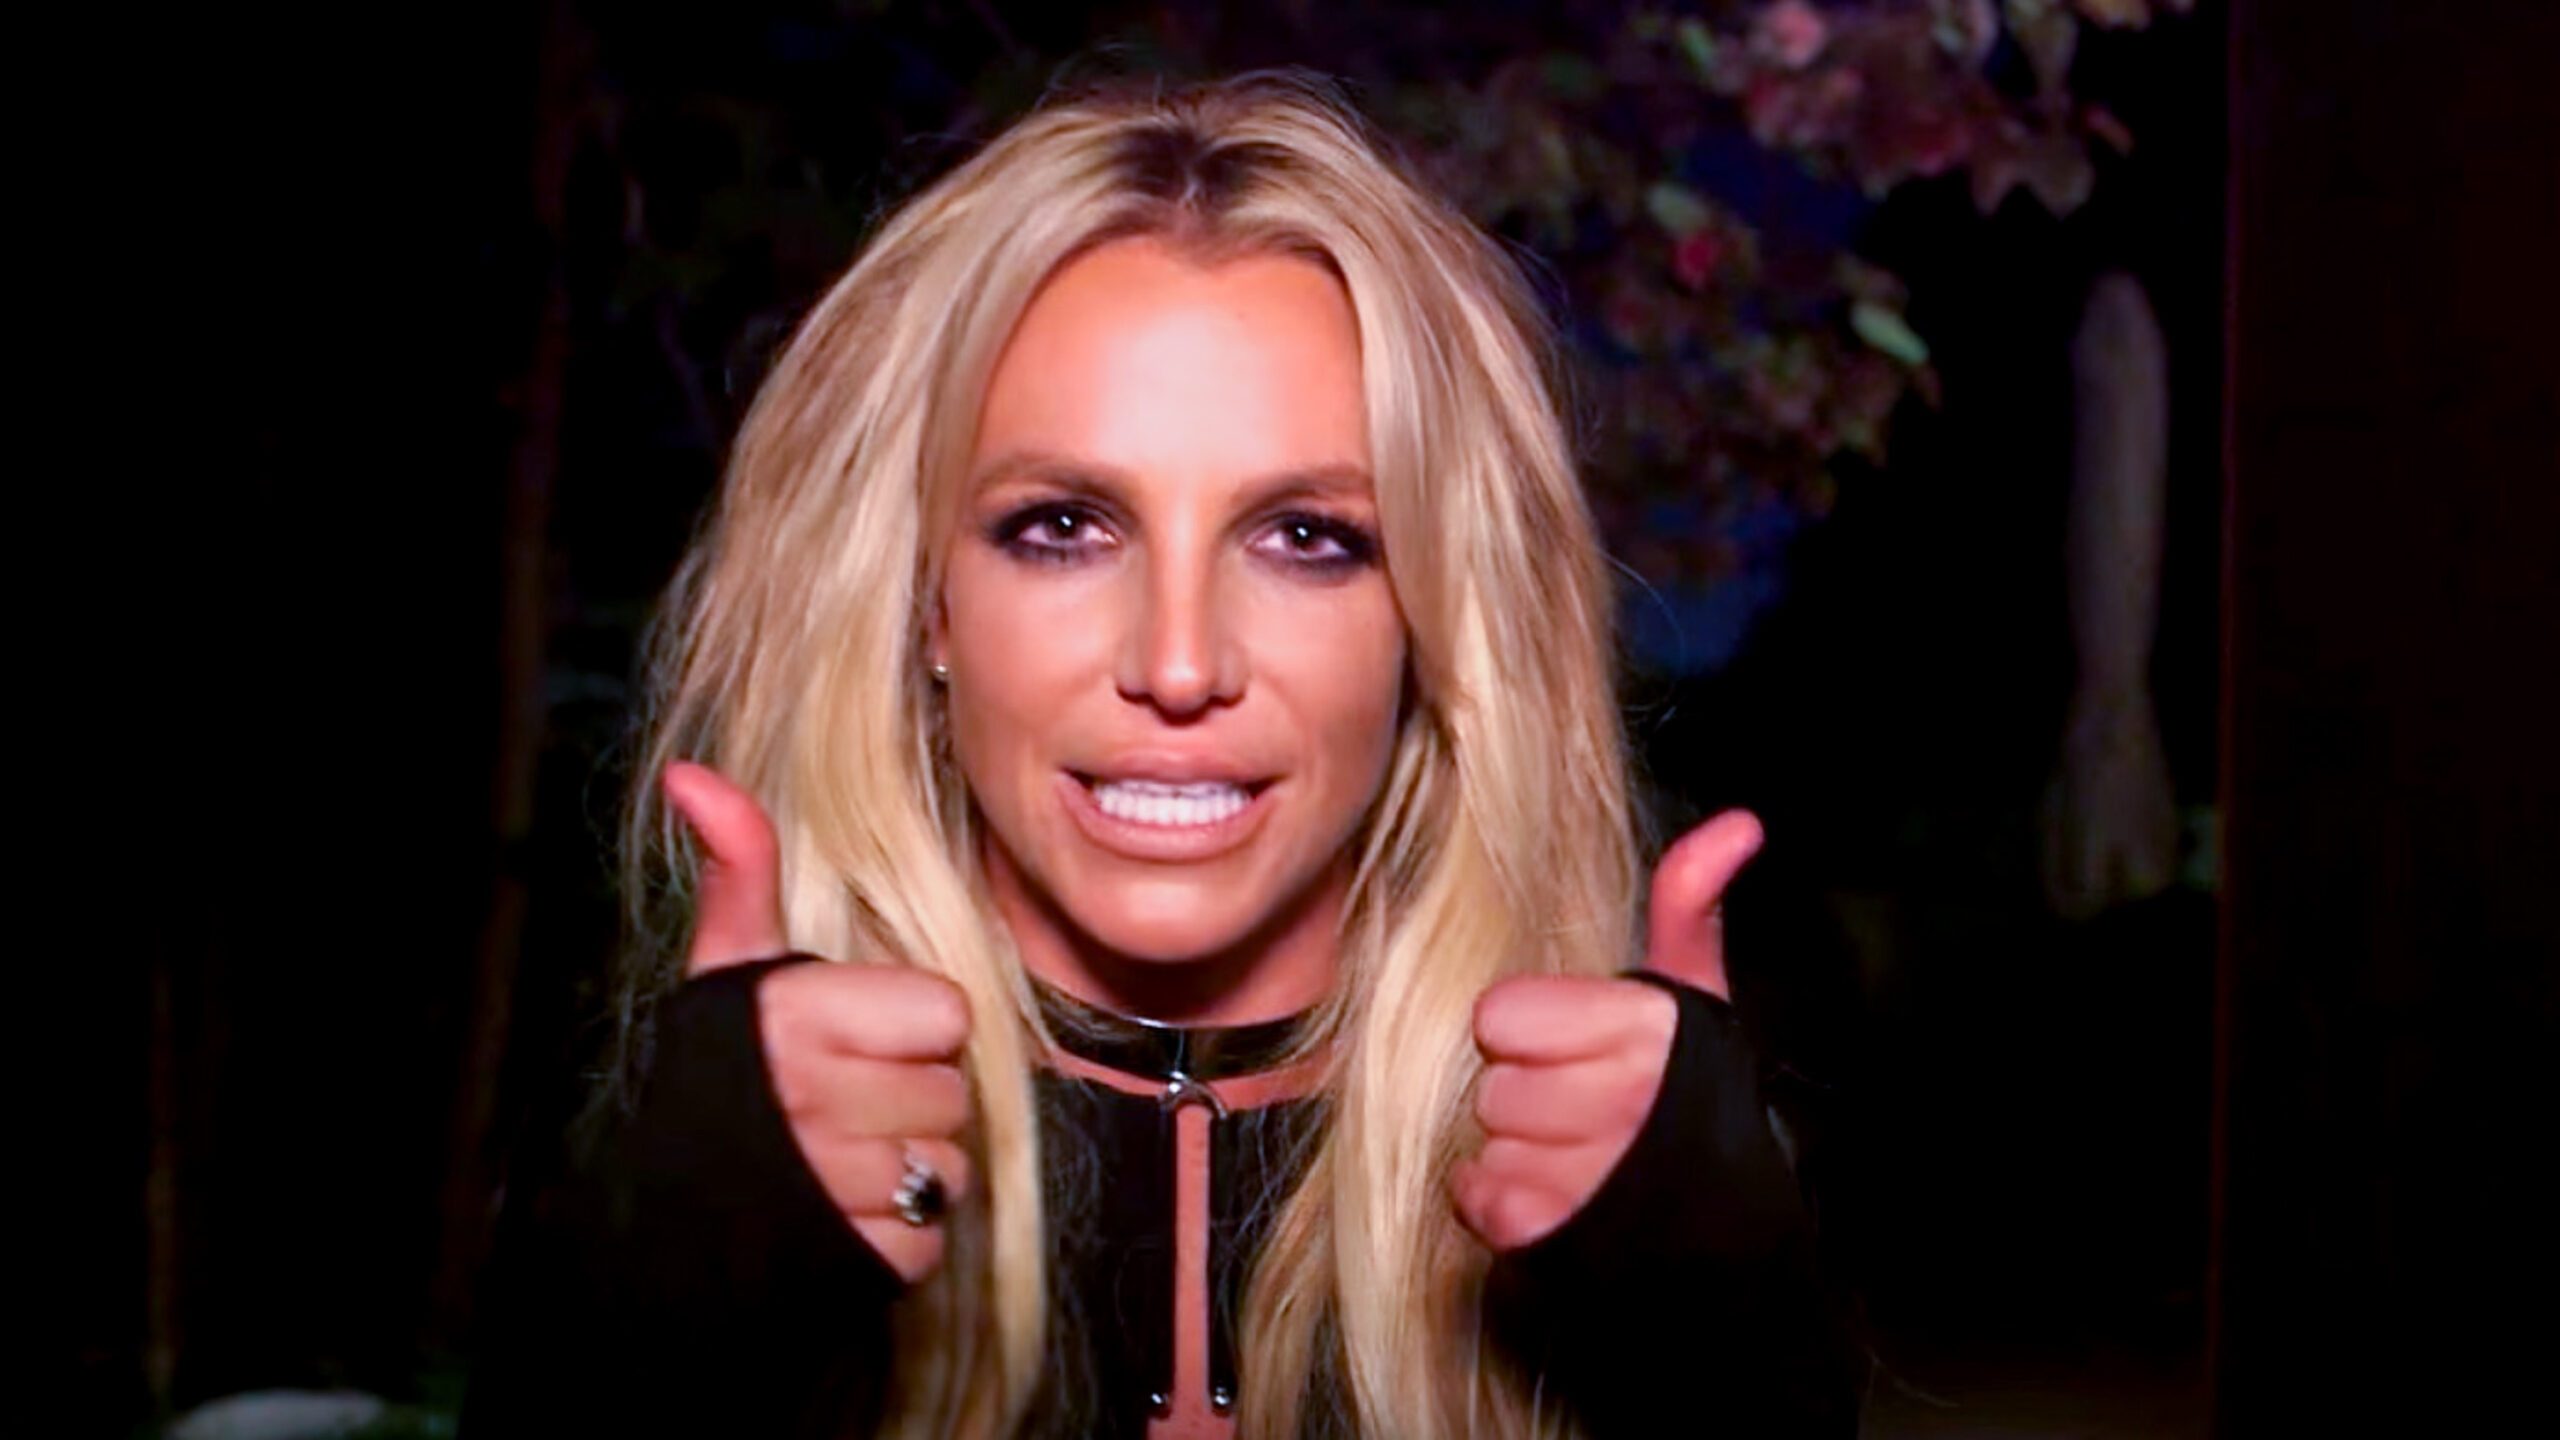 WATCH: Britney Spears breaks into Jimmy Kimmel’s bedroom for surprise performance